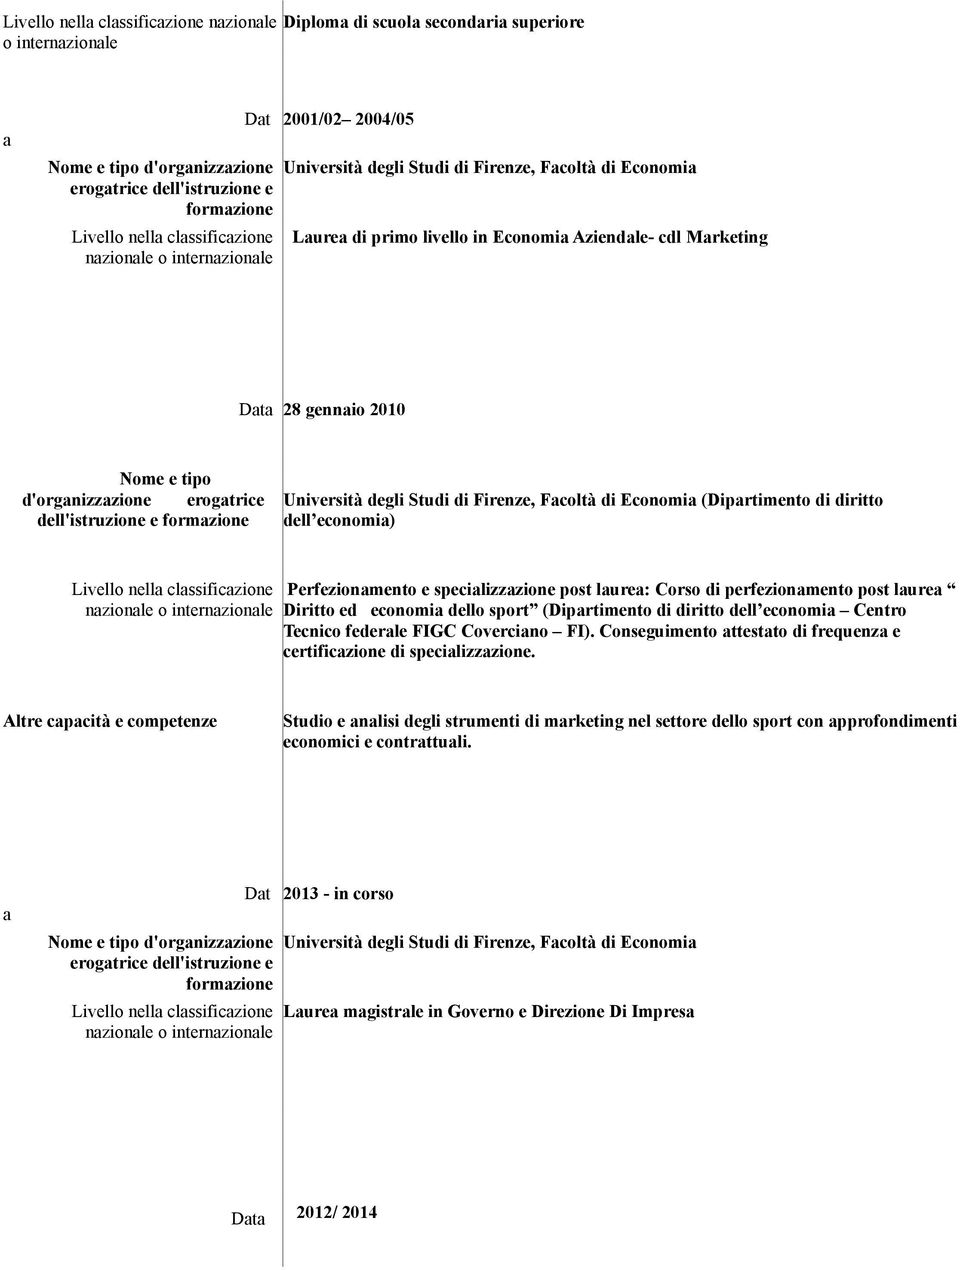 Nome e tipo d'organizzazione erogatrice dell'istruzione e formazione Università degli Studi di Firenze, Facoltà di Economia (Dipartimento di diritto dell economia) Livello nella classificazione